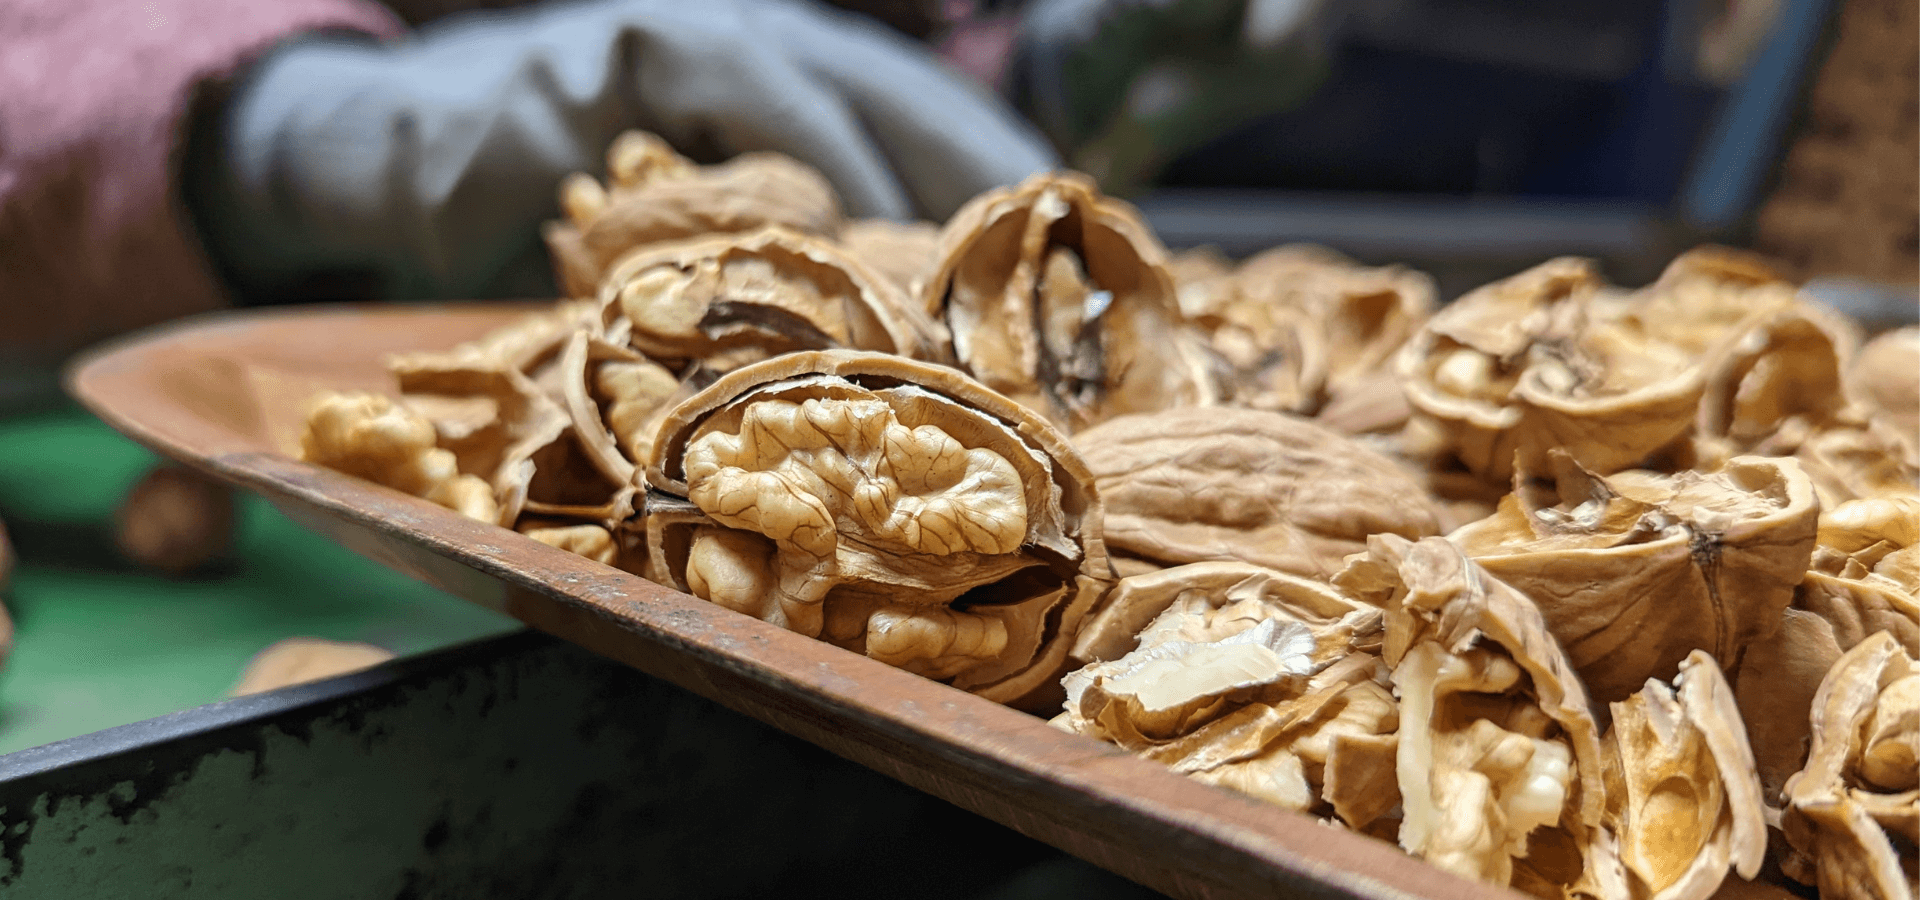 Comment le nuciculteur Vincent Cony consomme-t-il les noix qu'il produit ?